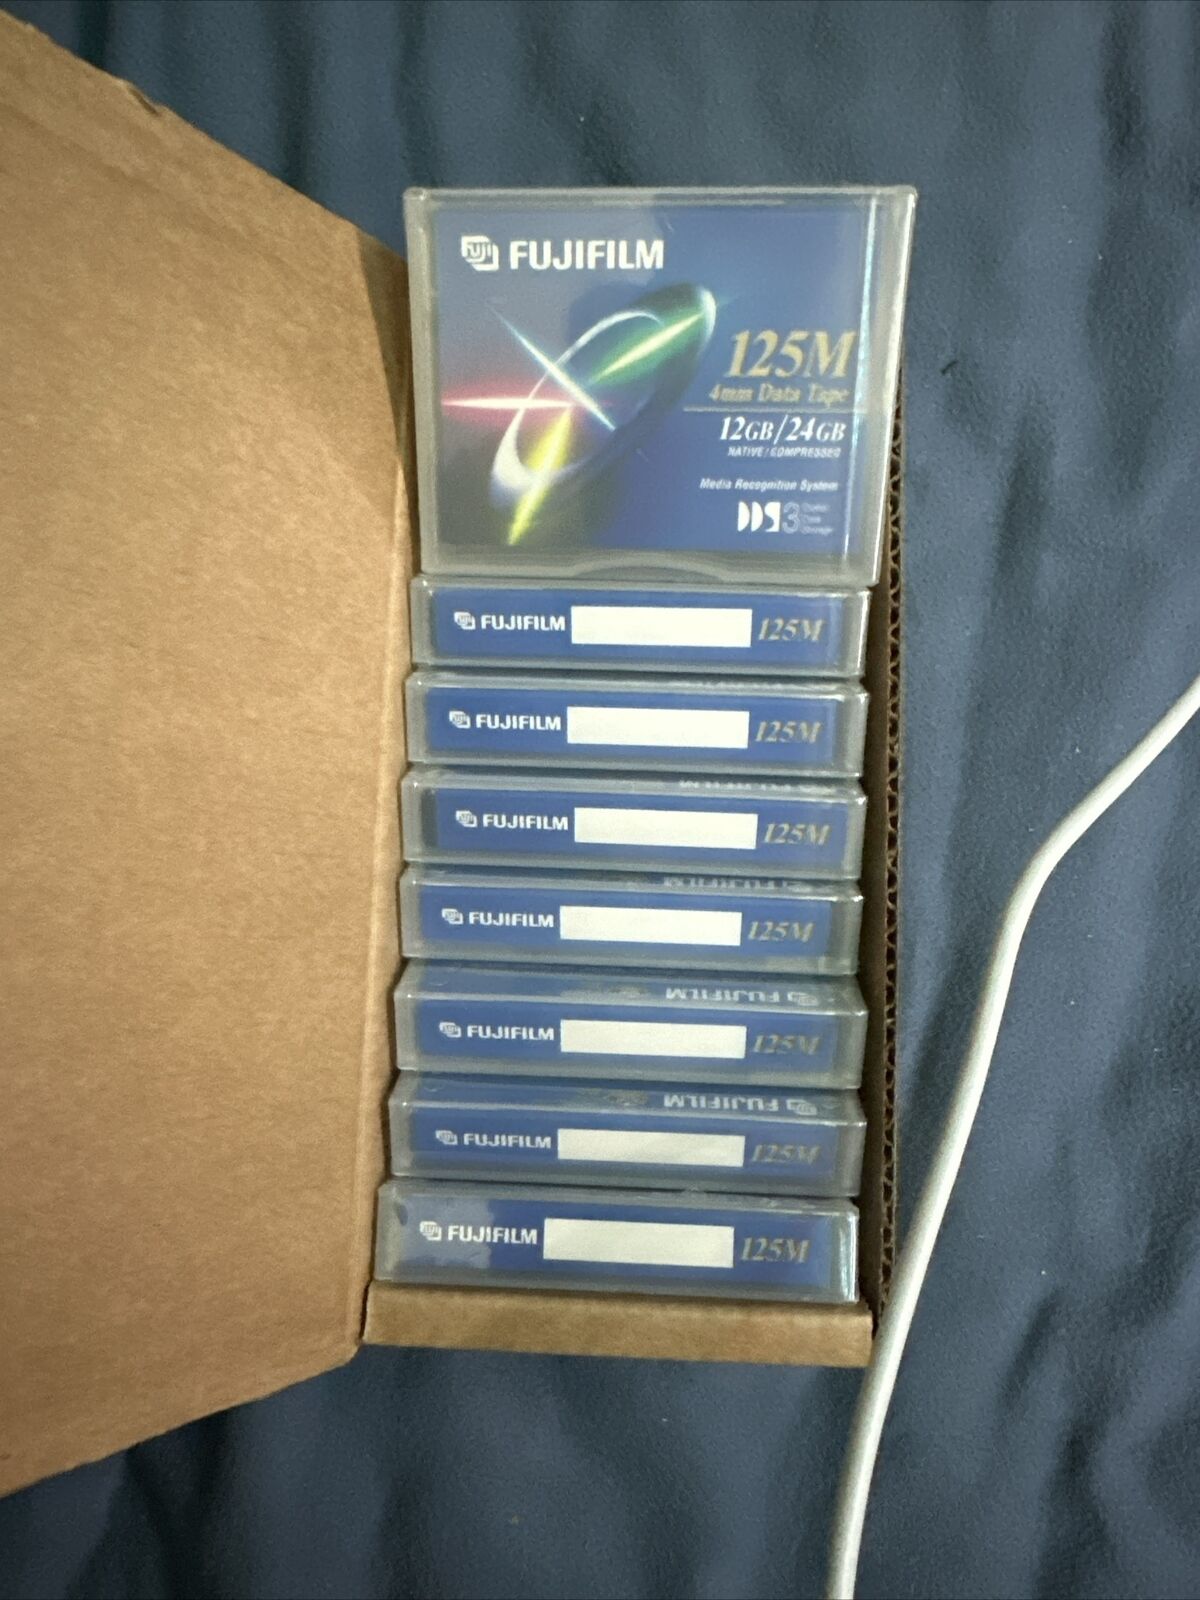 NEW Fujifilm 125M 12GB/24GB 4mm Data Tape New Sealed Box Of 8